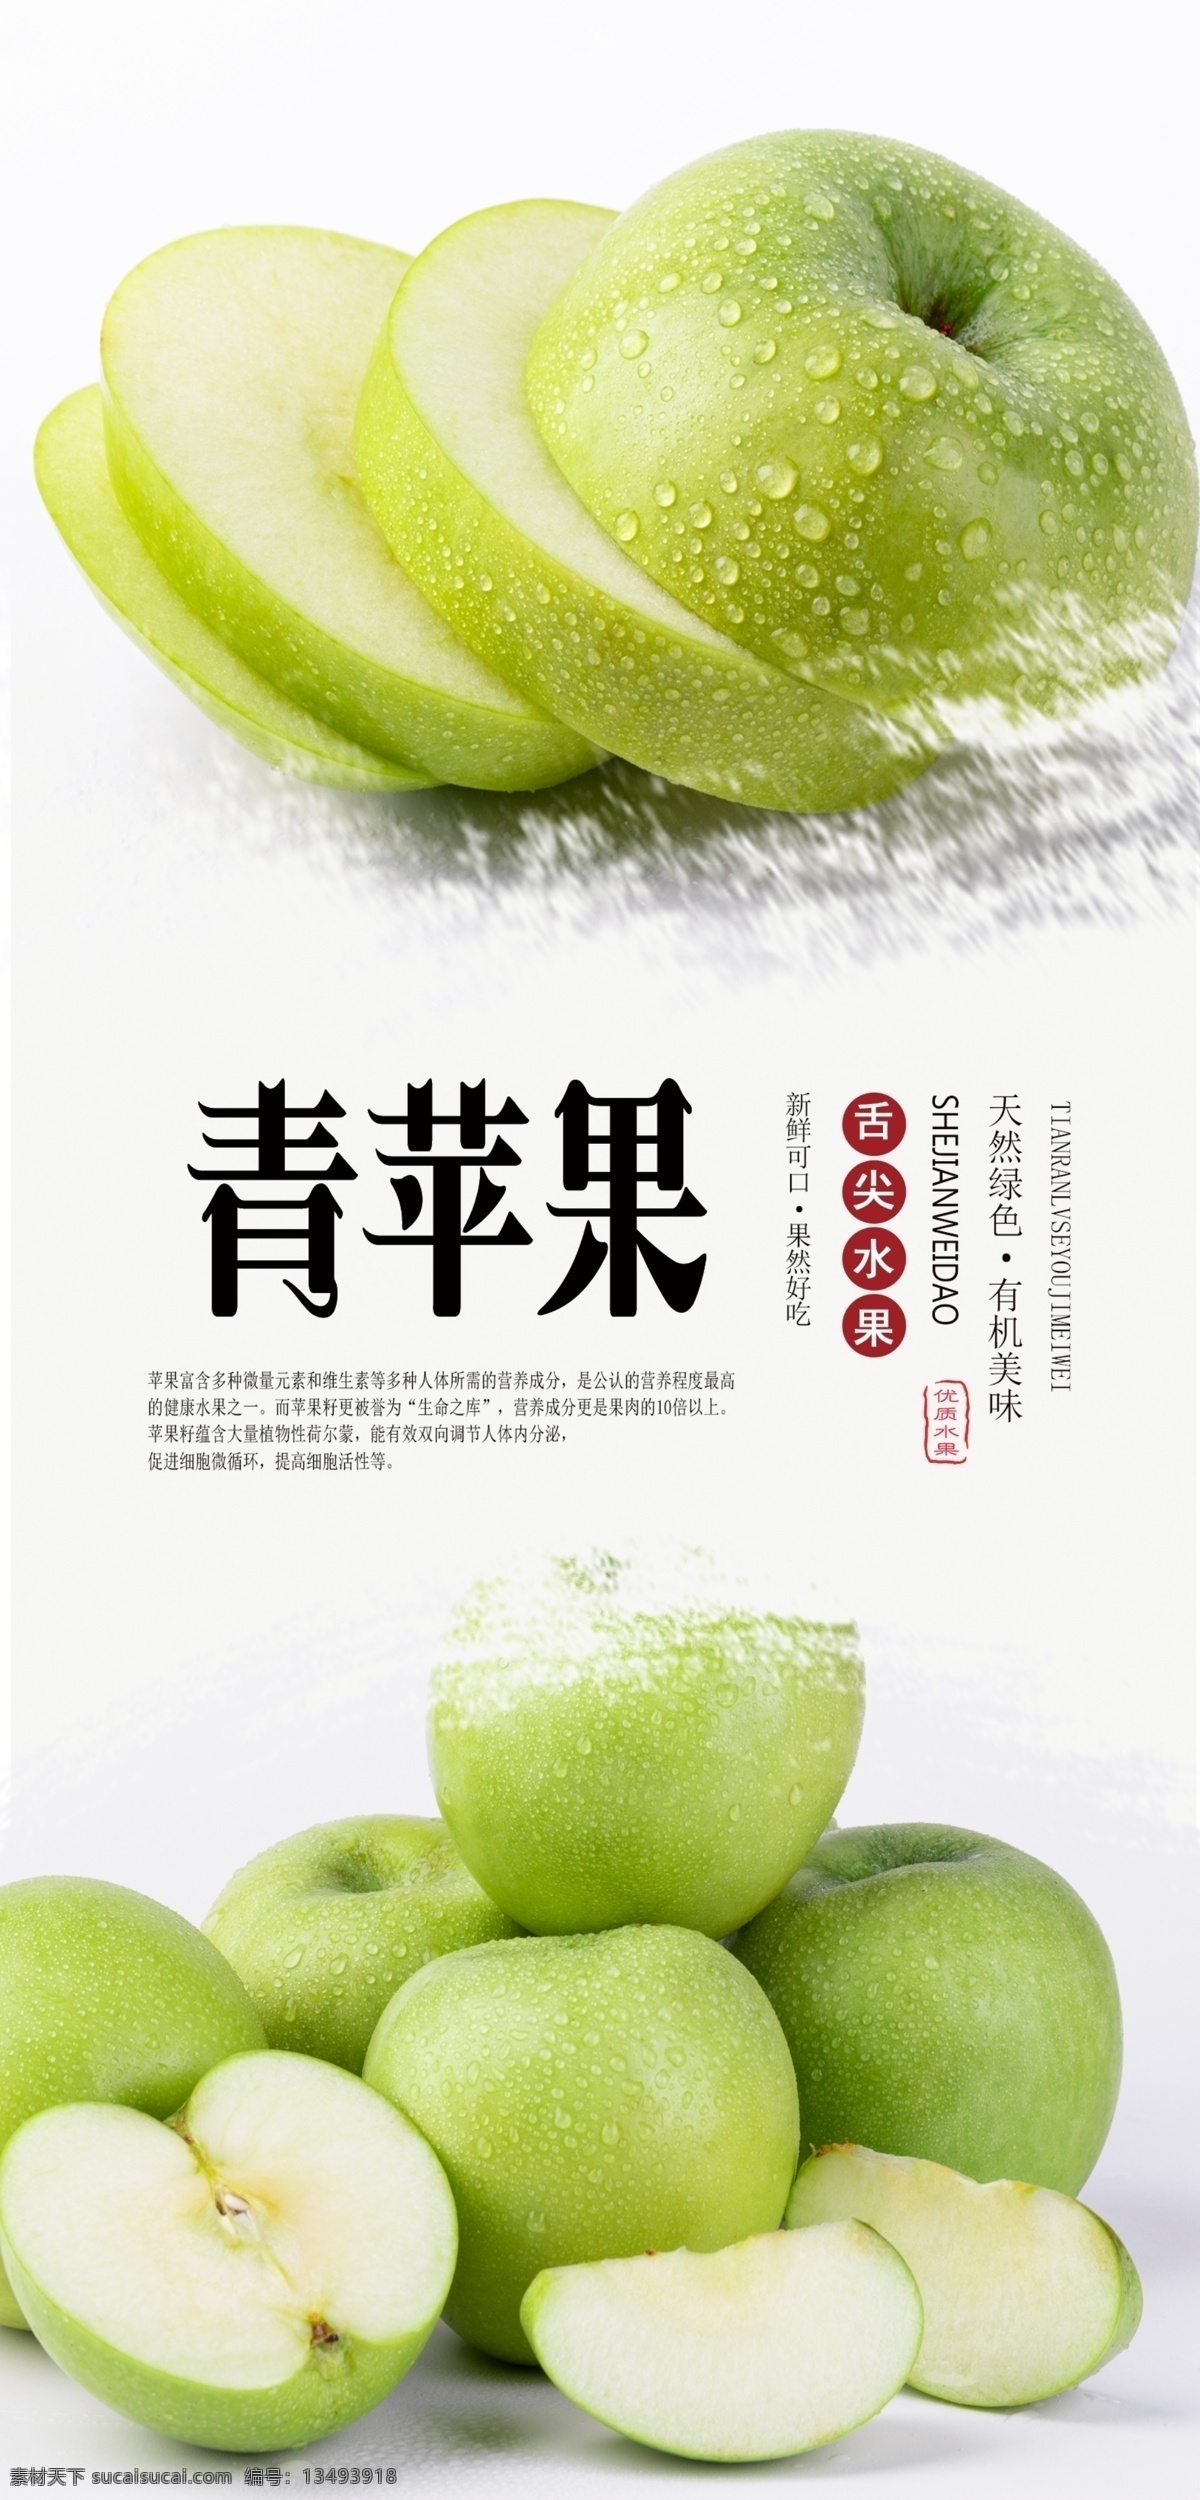 青苹果 分层 海报 苹果 新鲜 天然 无公害 营养 美味 绿色 水果 新鲜水果 采摘